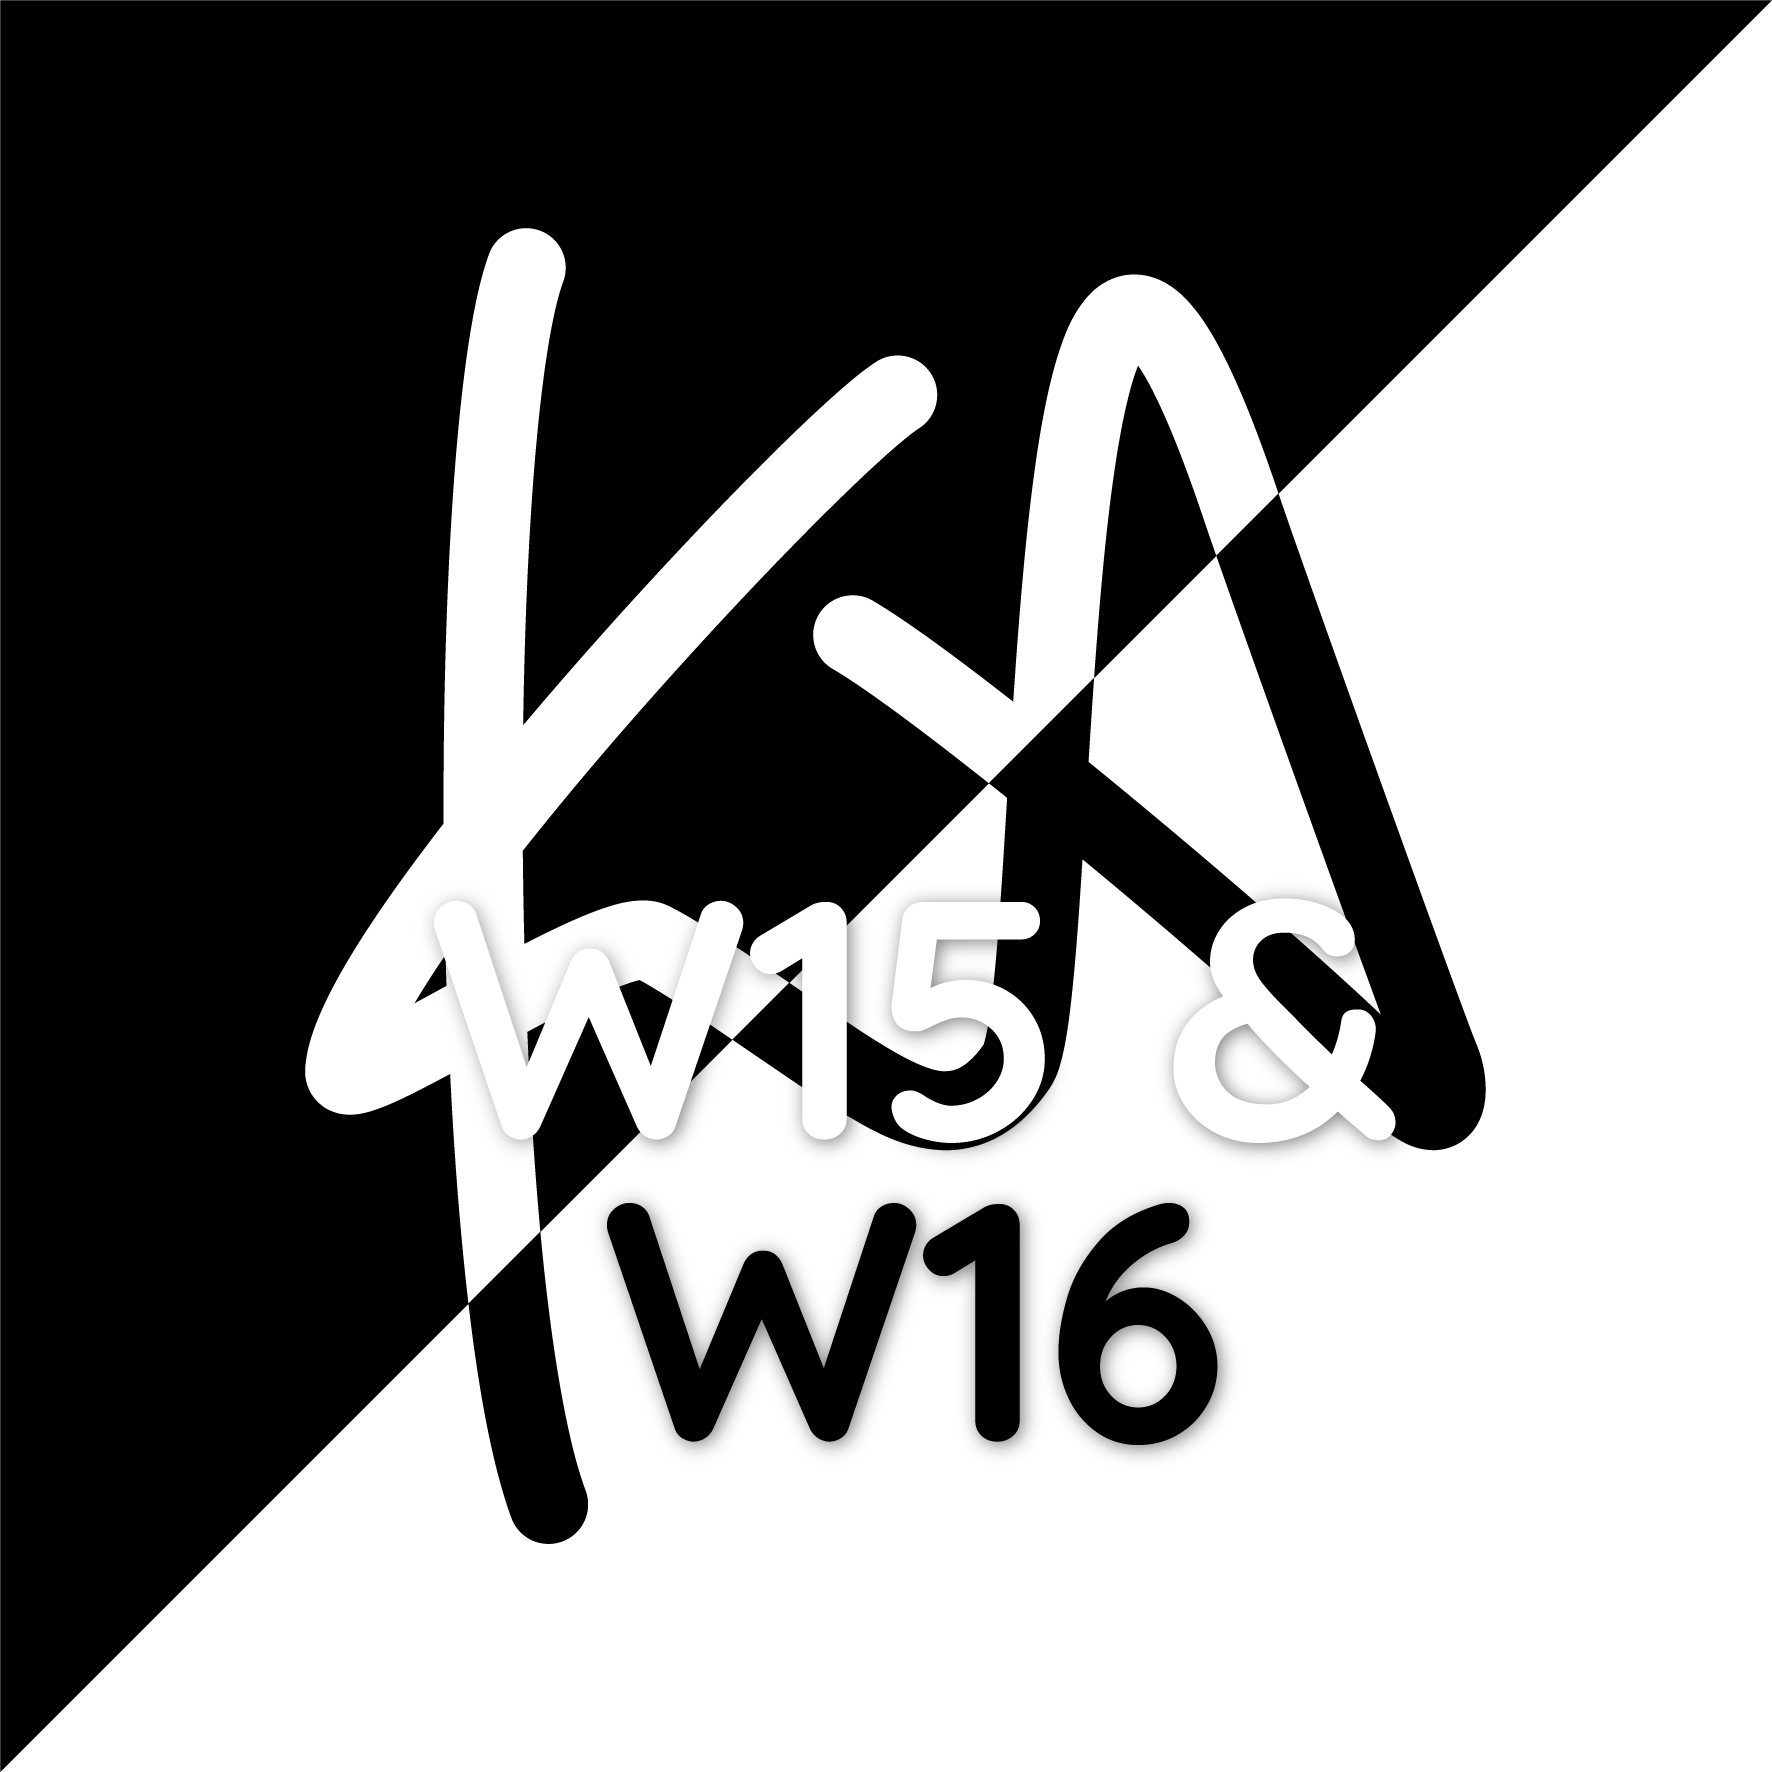 KA W15 & W16